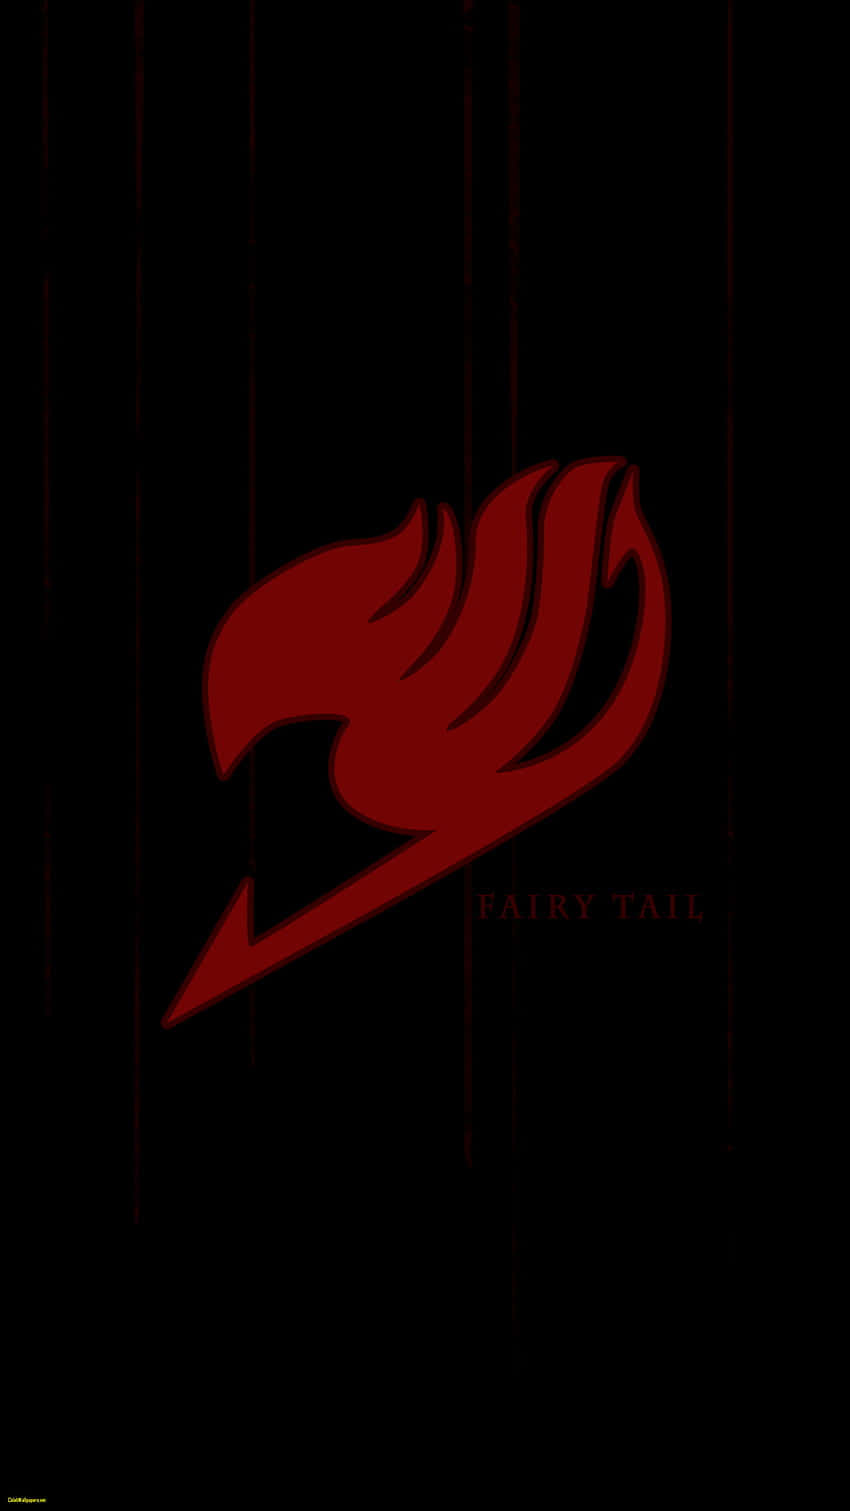 Ellogotipo Dinámico De Fairy Tail, Ambientado Entre Estrellas Y Fuego. Fondo de pantalla